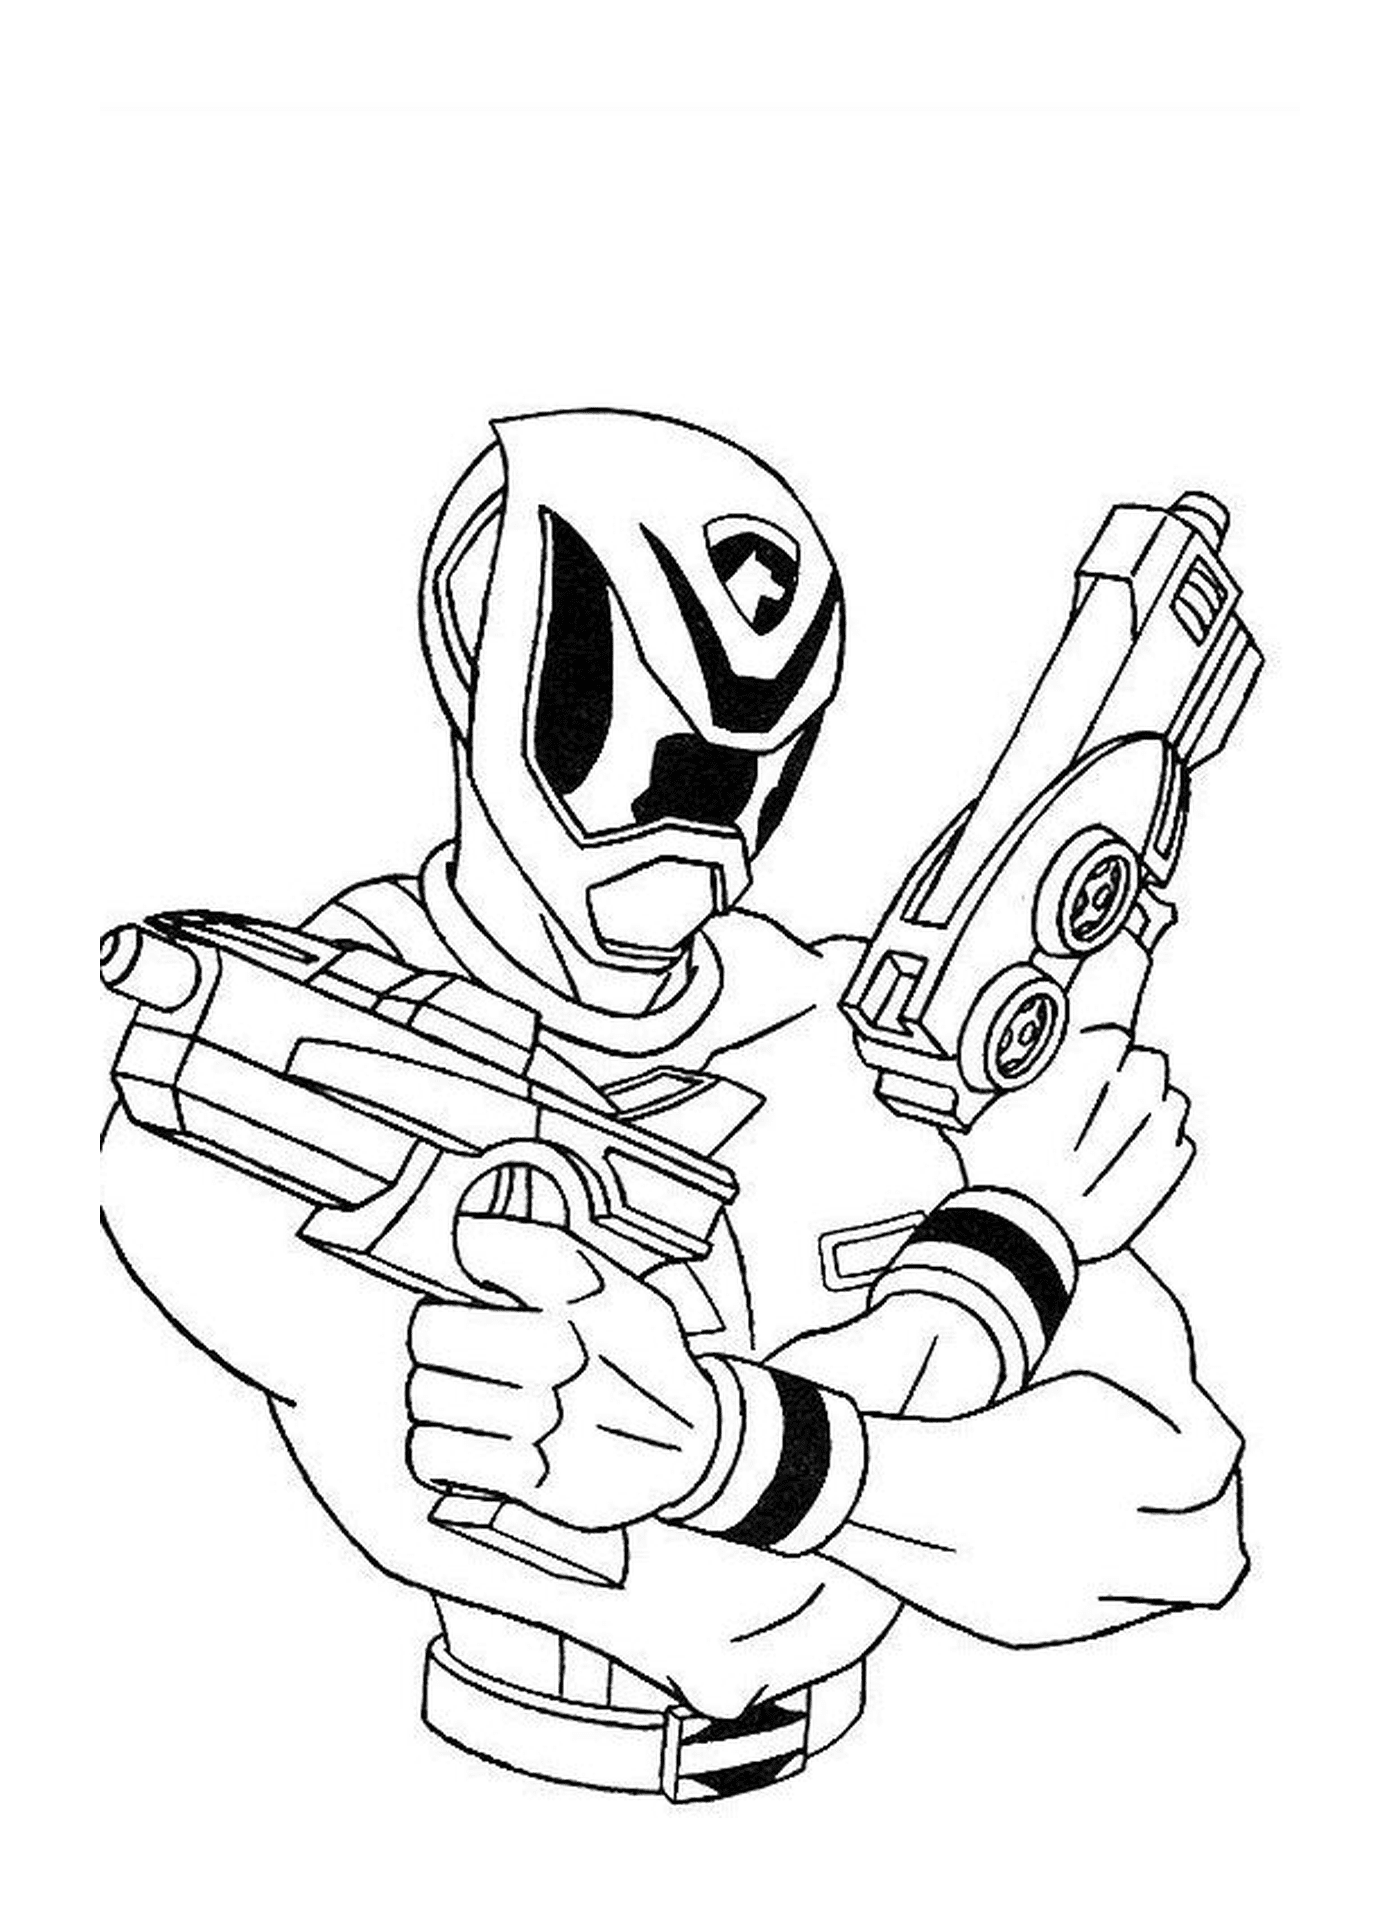   Présence d'un Power Ranger avec des fusils 